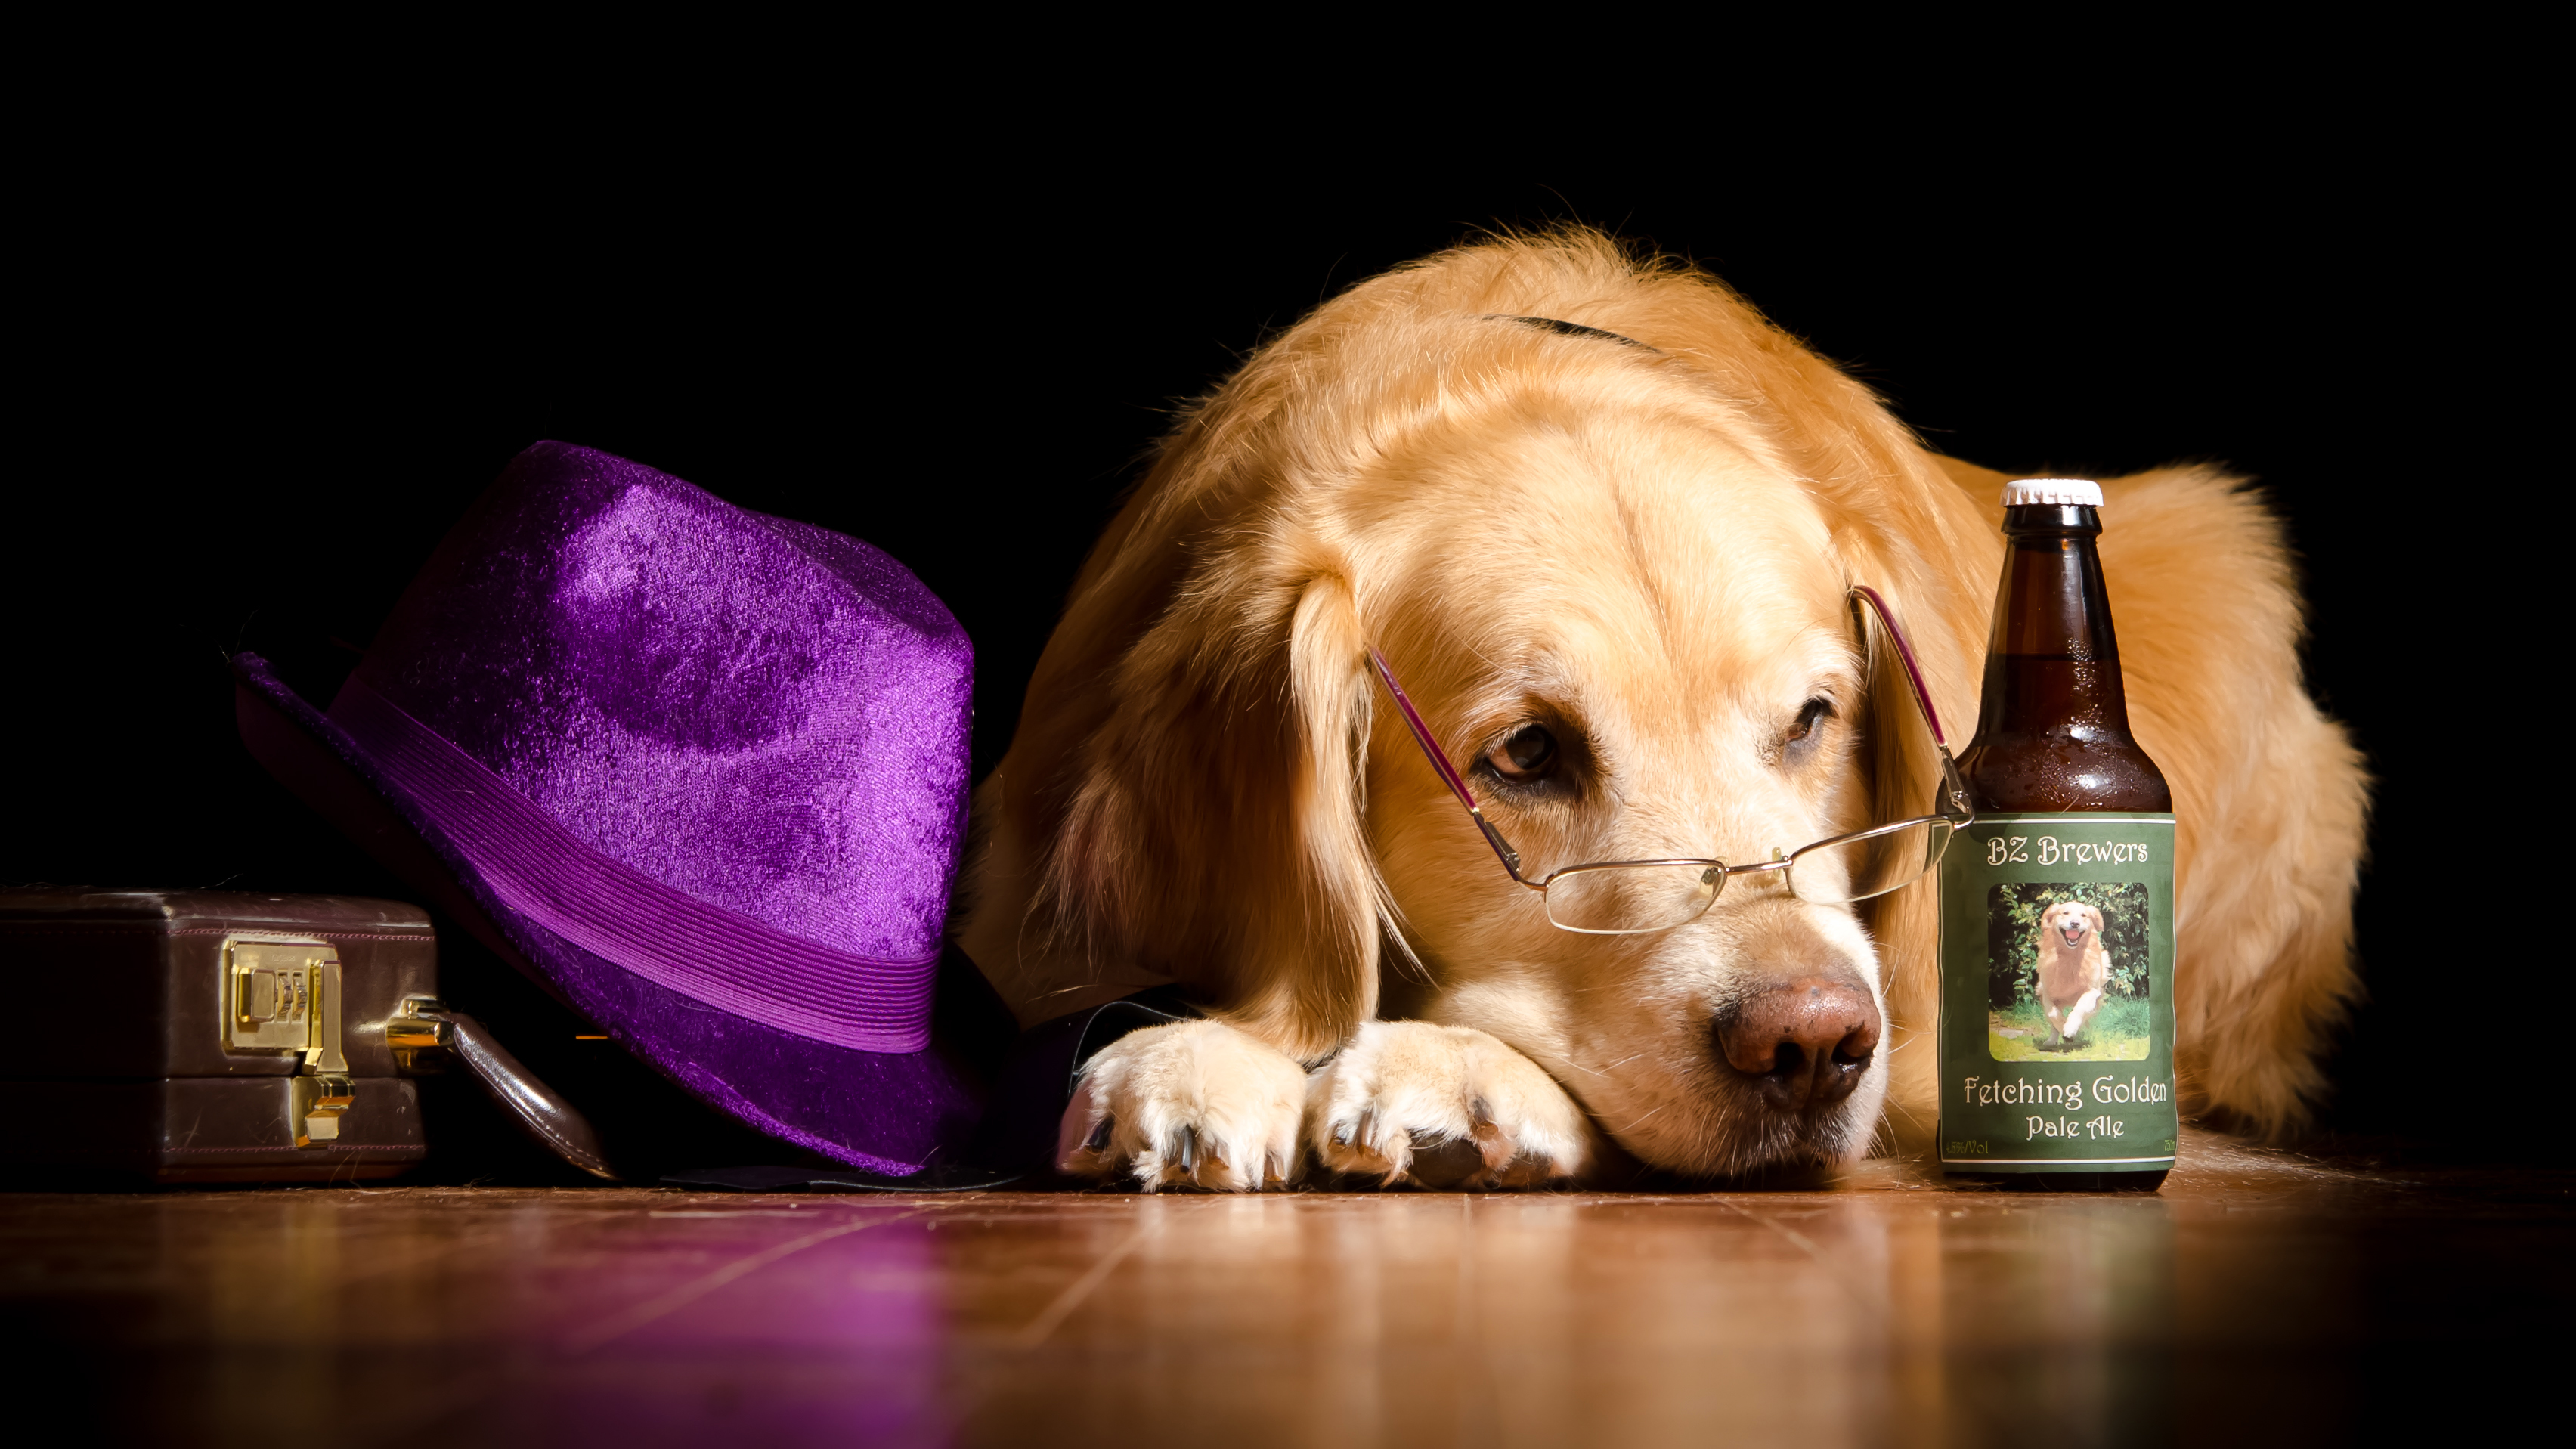 Download mobile wallpaper Dogs, Dog, Animal, Golden Retriever, Glasses, Hat, Bottle for free.